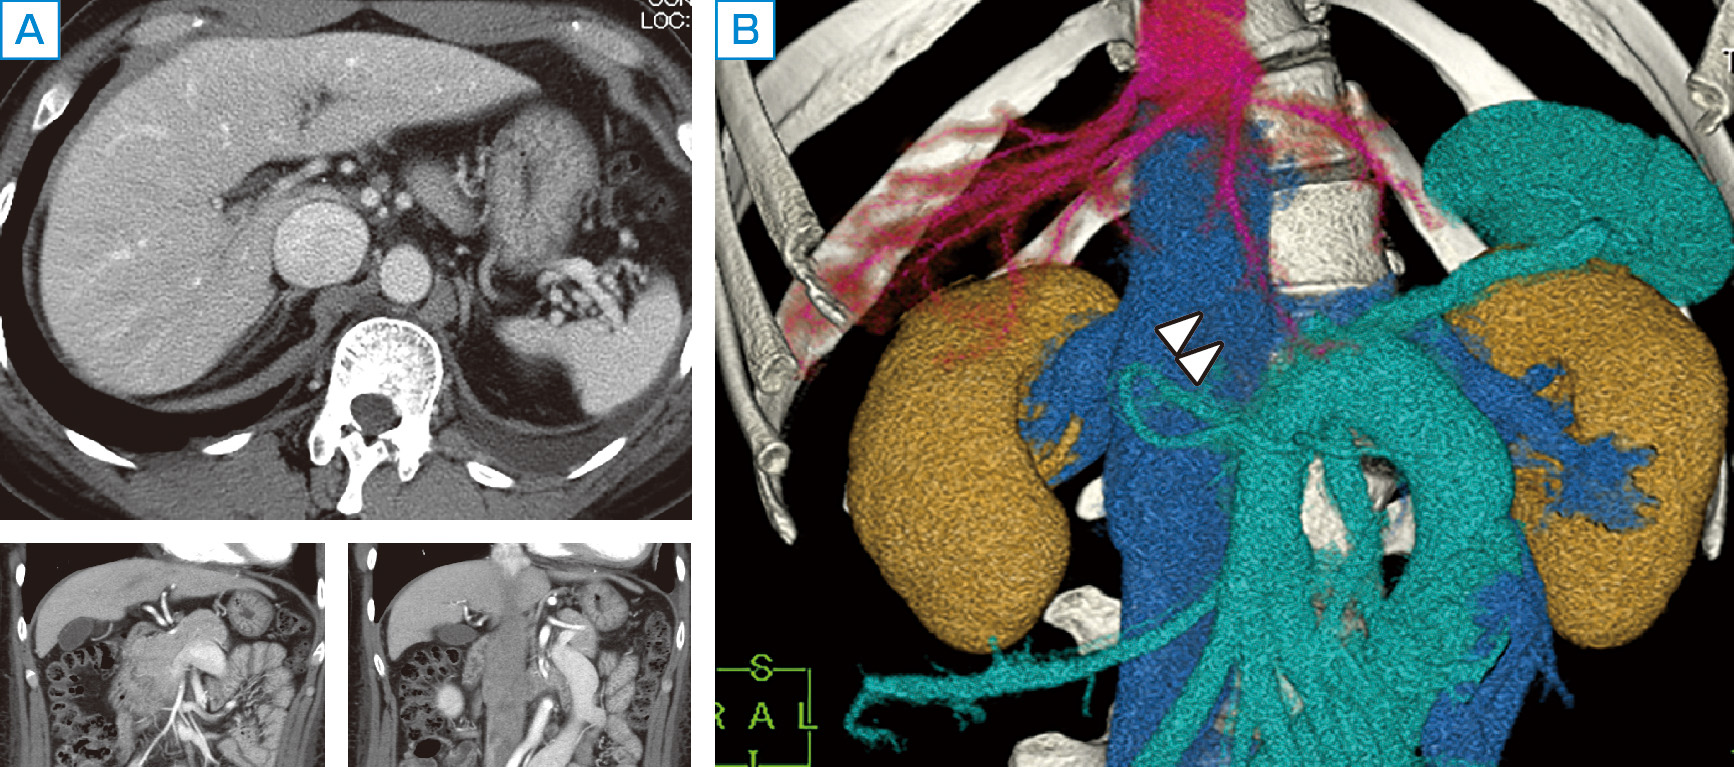 ⓔ図12-17-3　先天性門脈欠損症の腹部画像所見 A：腹部造影ダイナミックCTの横断面 (上段)，矢状面 (下段) では肝門部の門脈が描出されていないように見えるが，血管像はイメージしにくい． B：3D–CTとして画像を再構築することで門脈本幹が欠損し (白矢頭)，拡張した下腸間膜静脈が左腎静脈と連続してP–Vシャントを形成しているのが明瞭に認識できる．